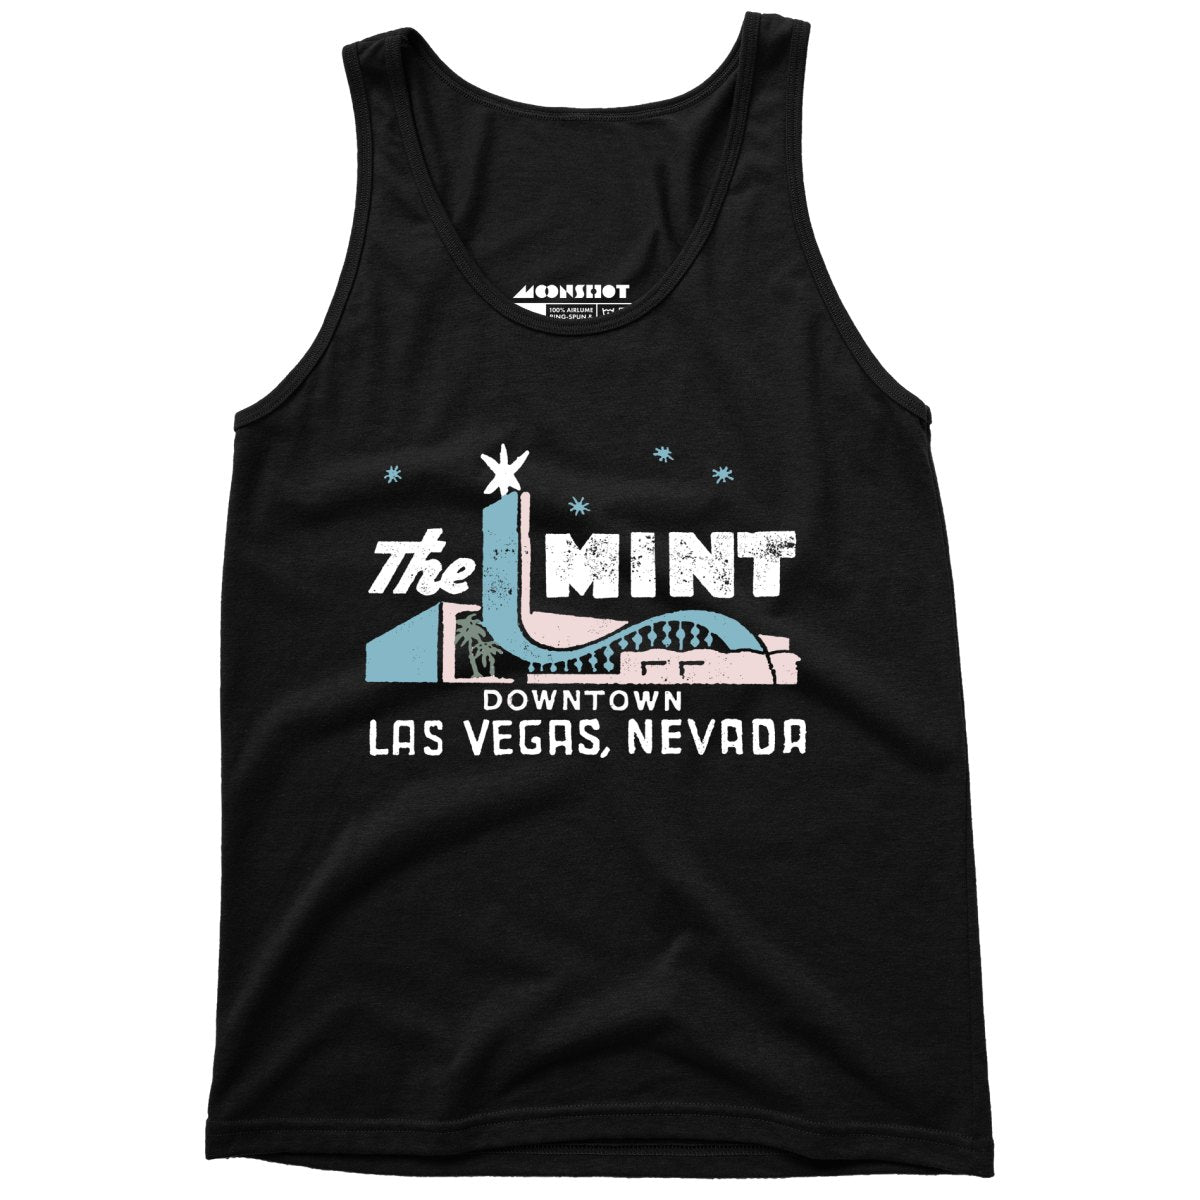 The Mint - Vintage Las Vegas - Unisex Tank Top